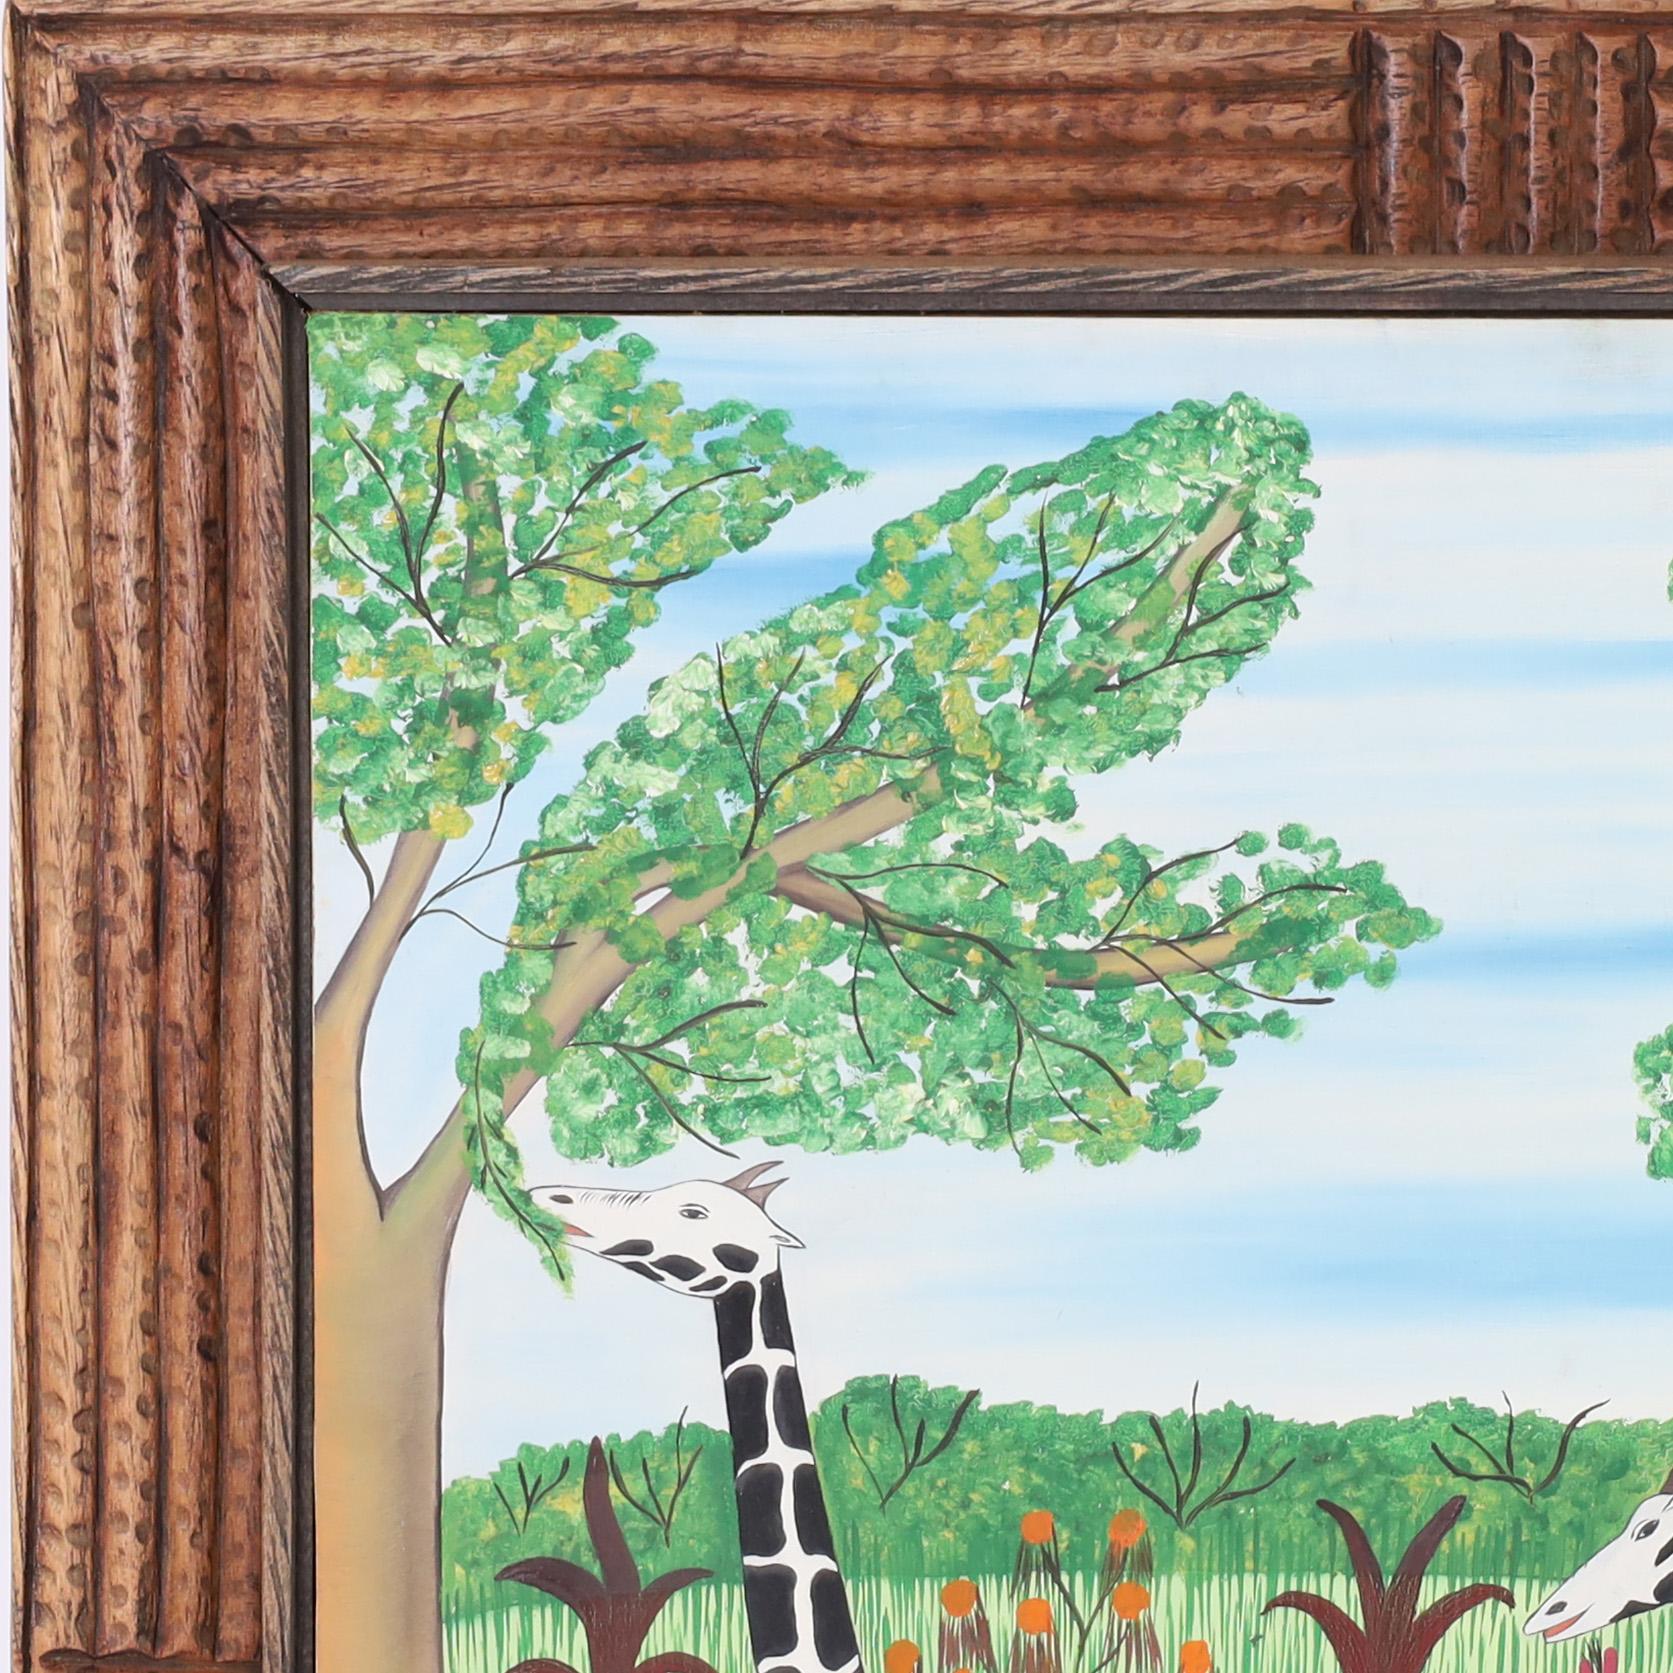 Auffälliges Vintage-Acrylgemälde auf Karton von zwei Giraffen in einer Landschaft mit Blumen und Bäumen, ausgeführt in einer unverwechselbaren verspielten naiven Technik. Signiert Fils Rigaud Benoit 74 und in der ursprünglichen geschnitzten